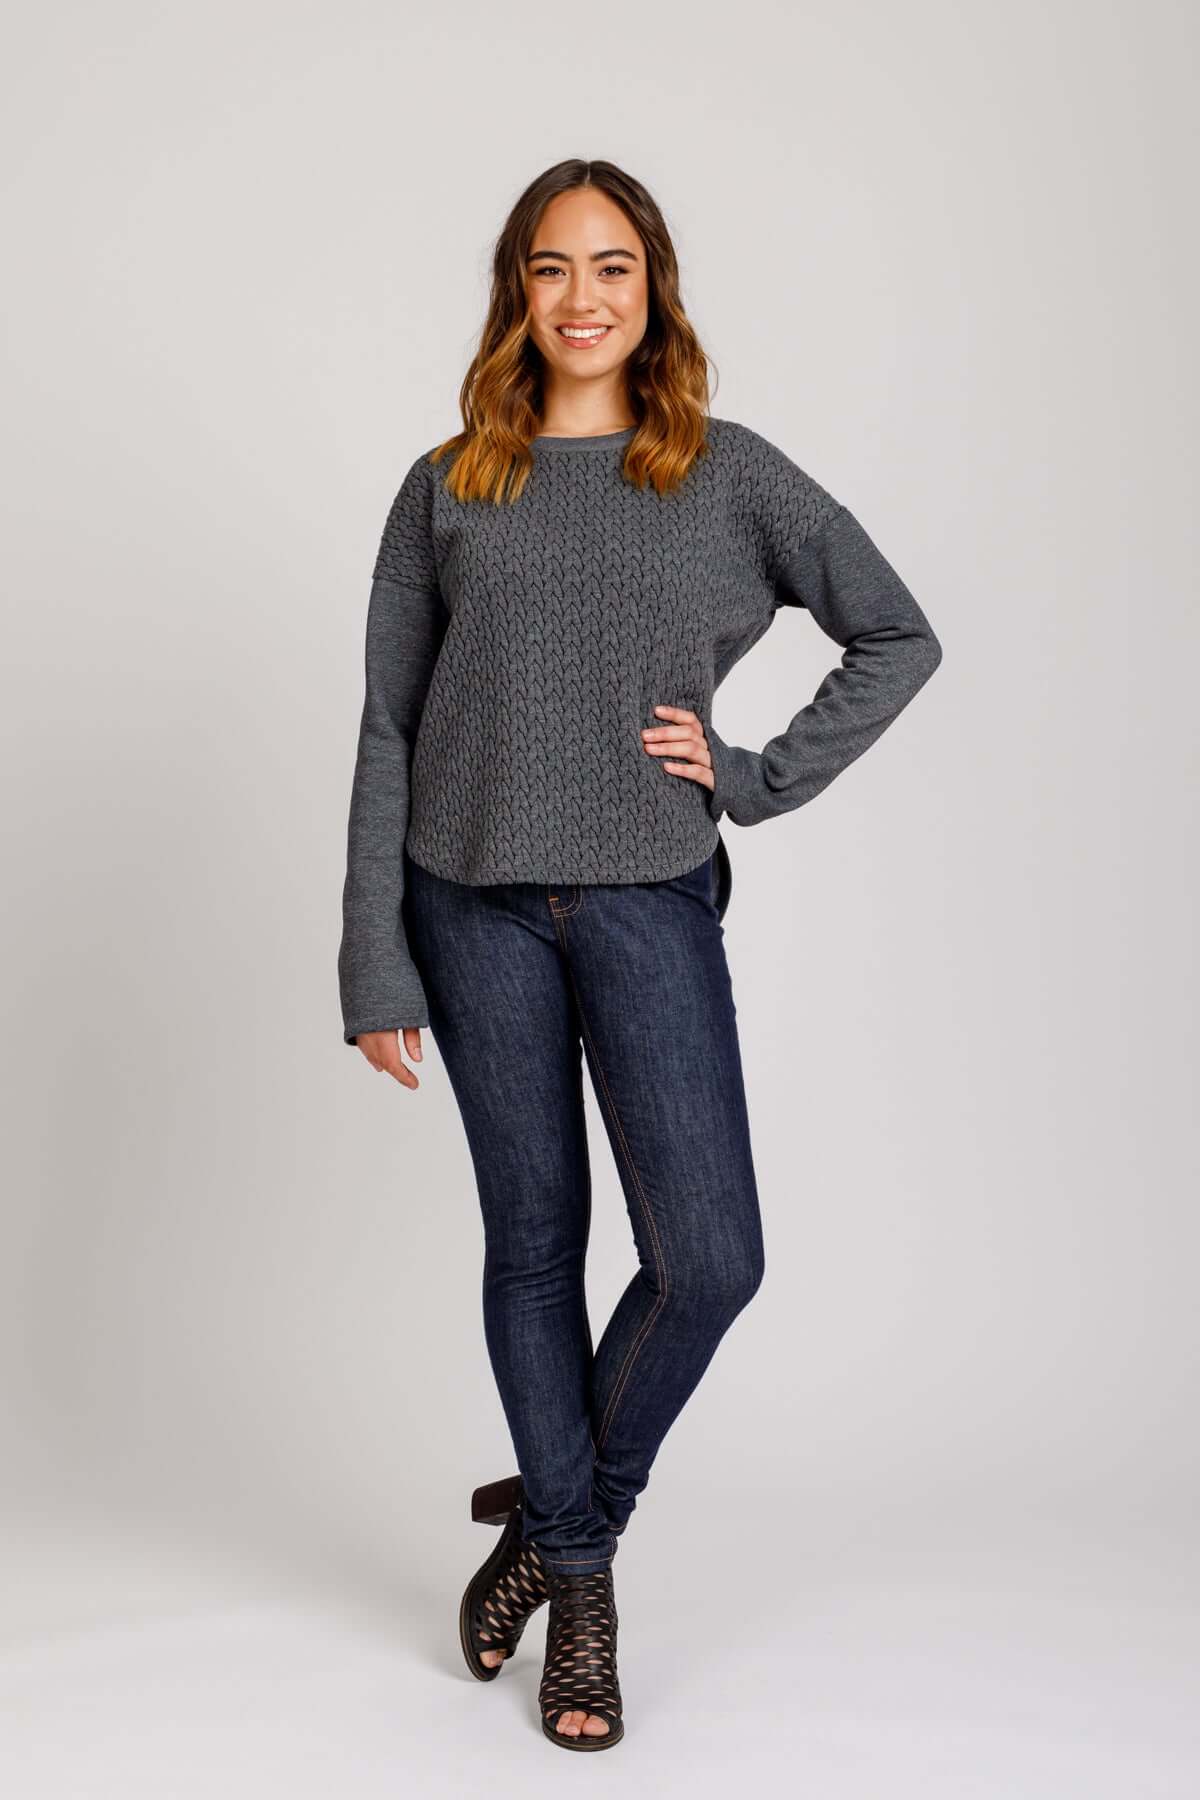 Megan Nielsen – Jarrah Sweater Set